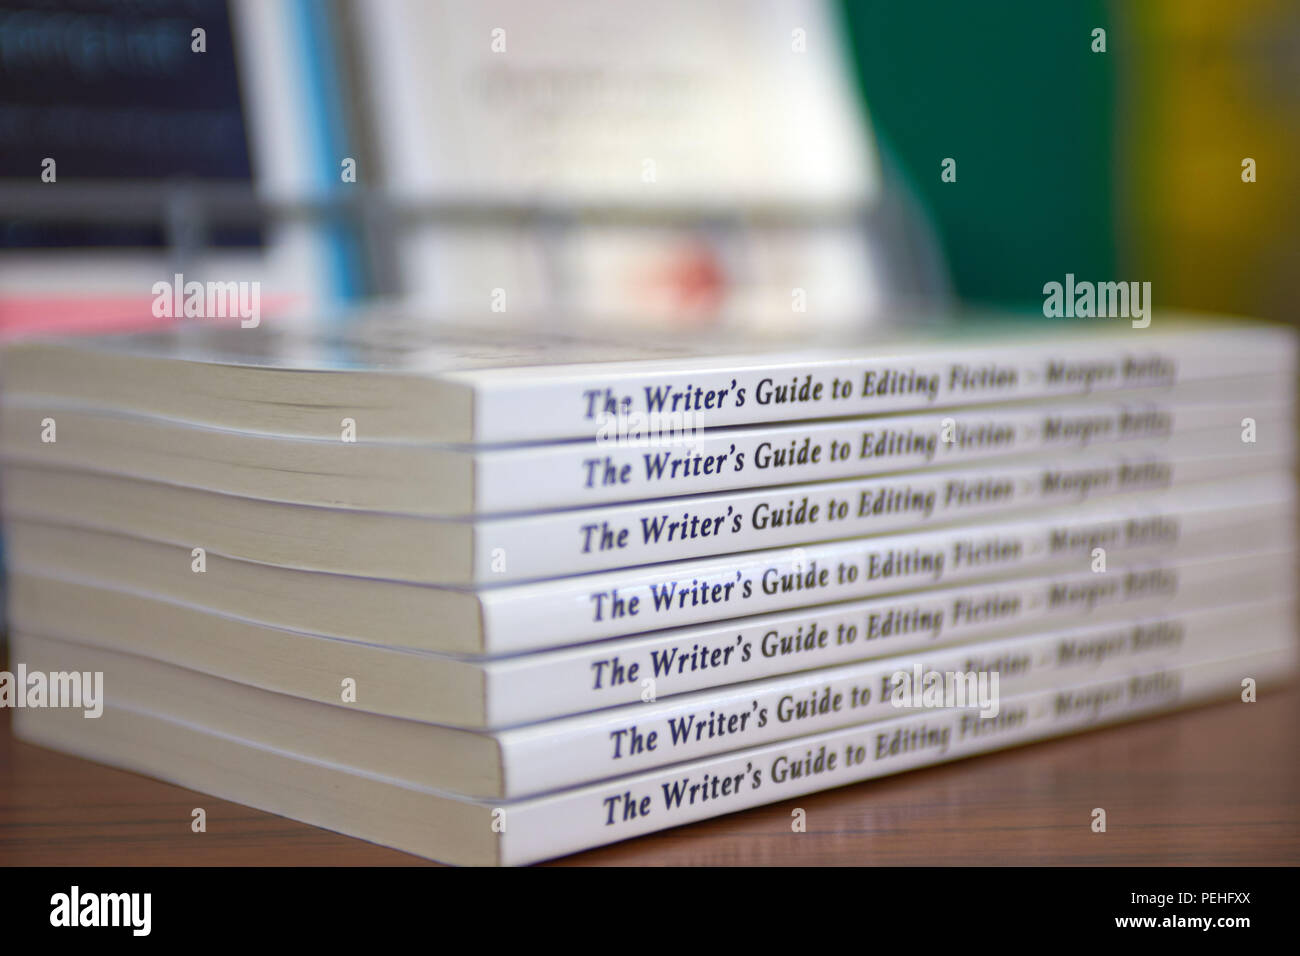 Einen Stapel Bücher Stacheln angezeigt mit Titel "Writer's Guide zu bearbeiten Fiction" Stockfoto